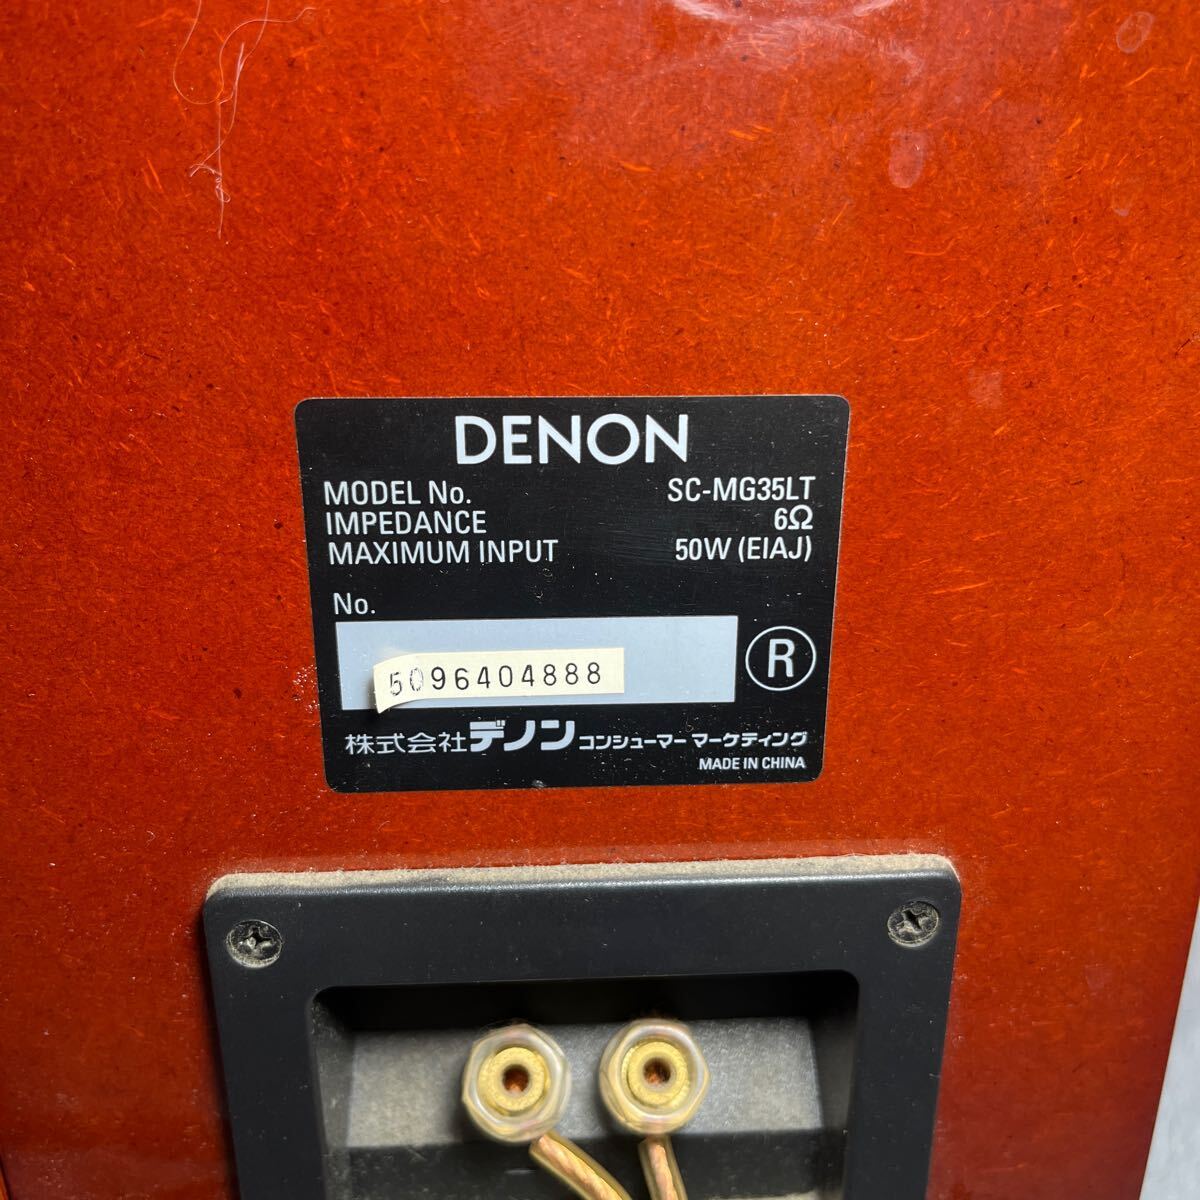 DENON Denon SC-MG35LT 2WAY SPEAKER PAIR звуковая аппаратура простой выход звука проверка settled 240426M05